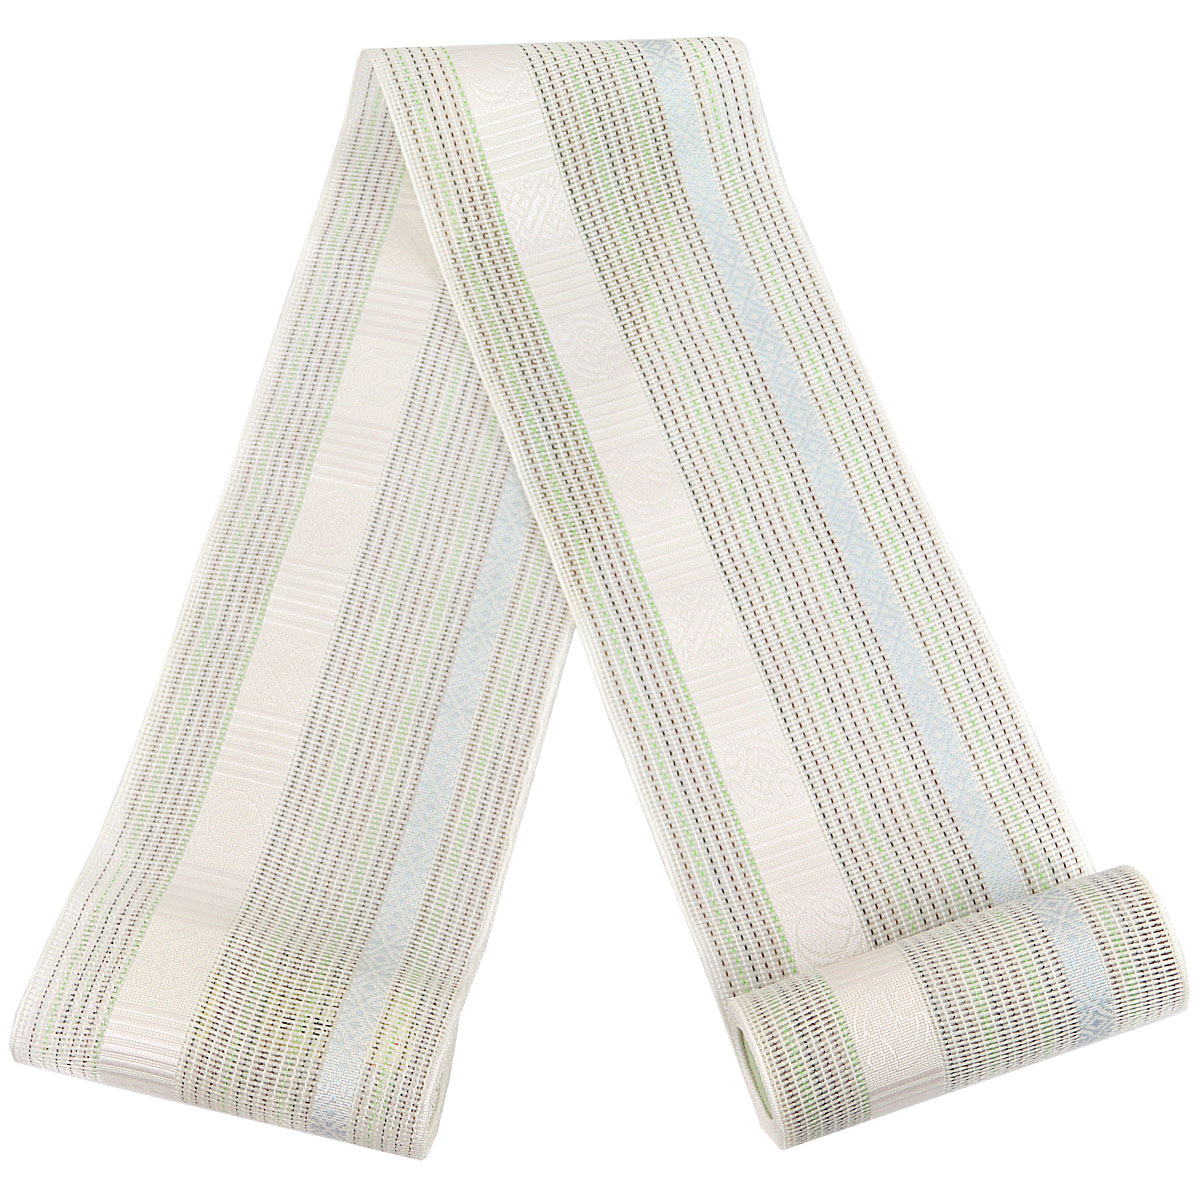 紗夏帯 半幅帯 -14- 正絹 博多織 絹100% 白/ベージュ系